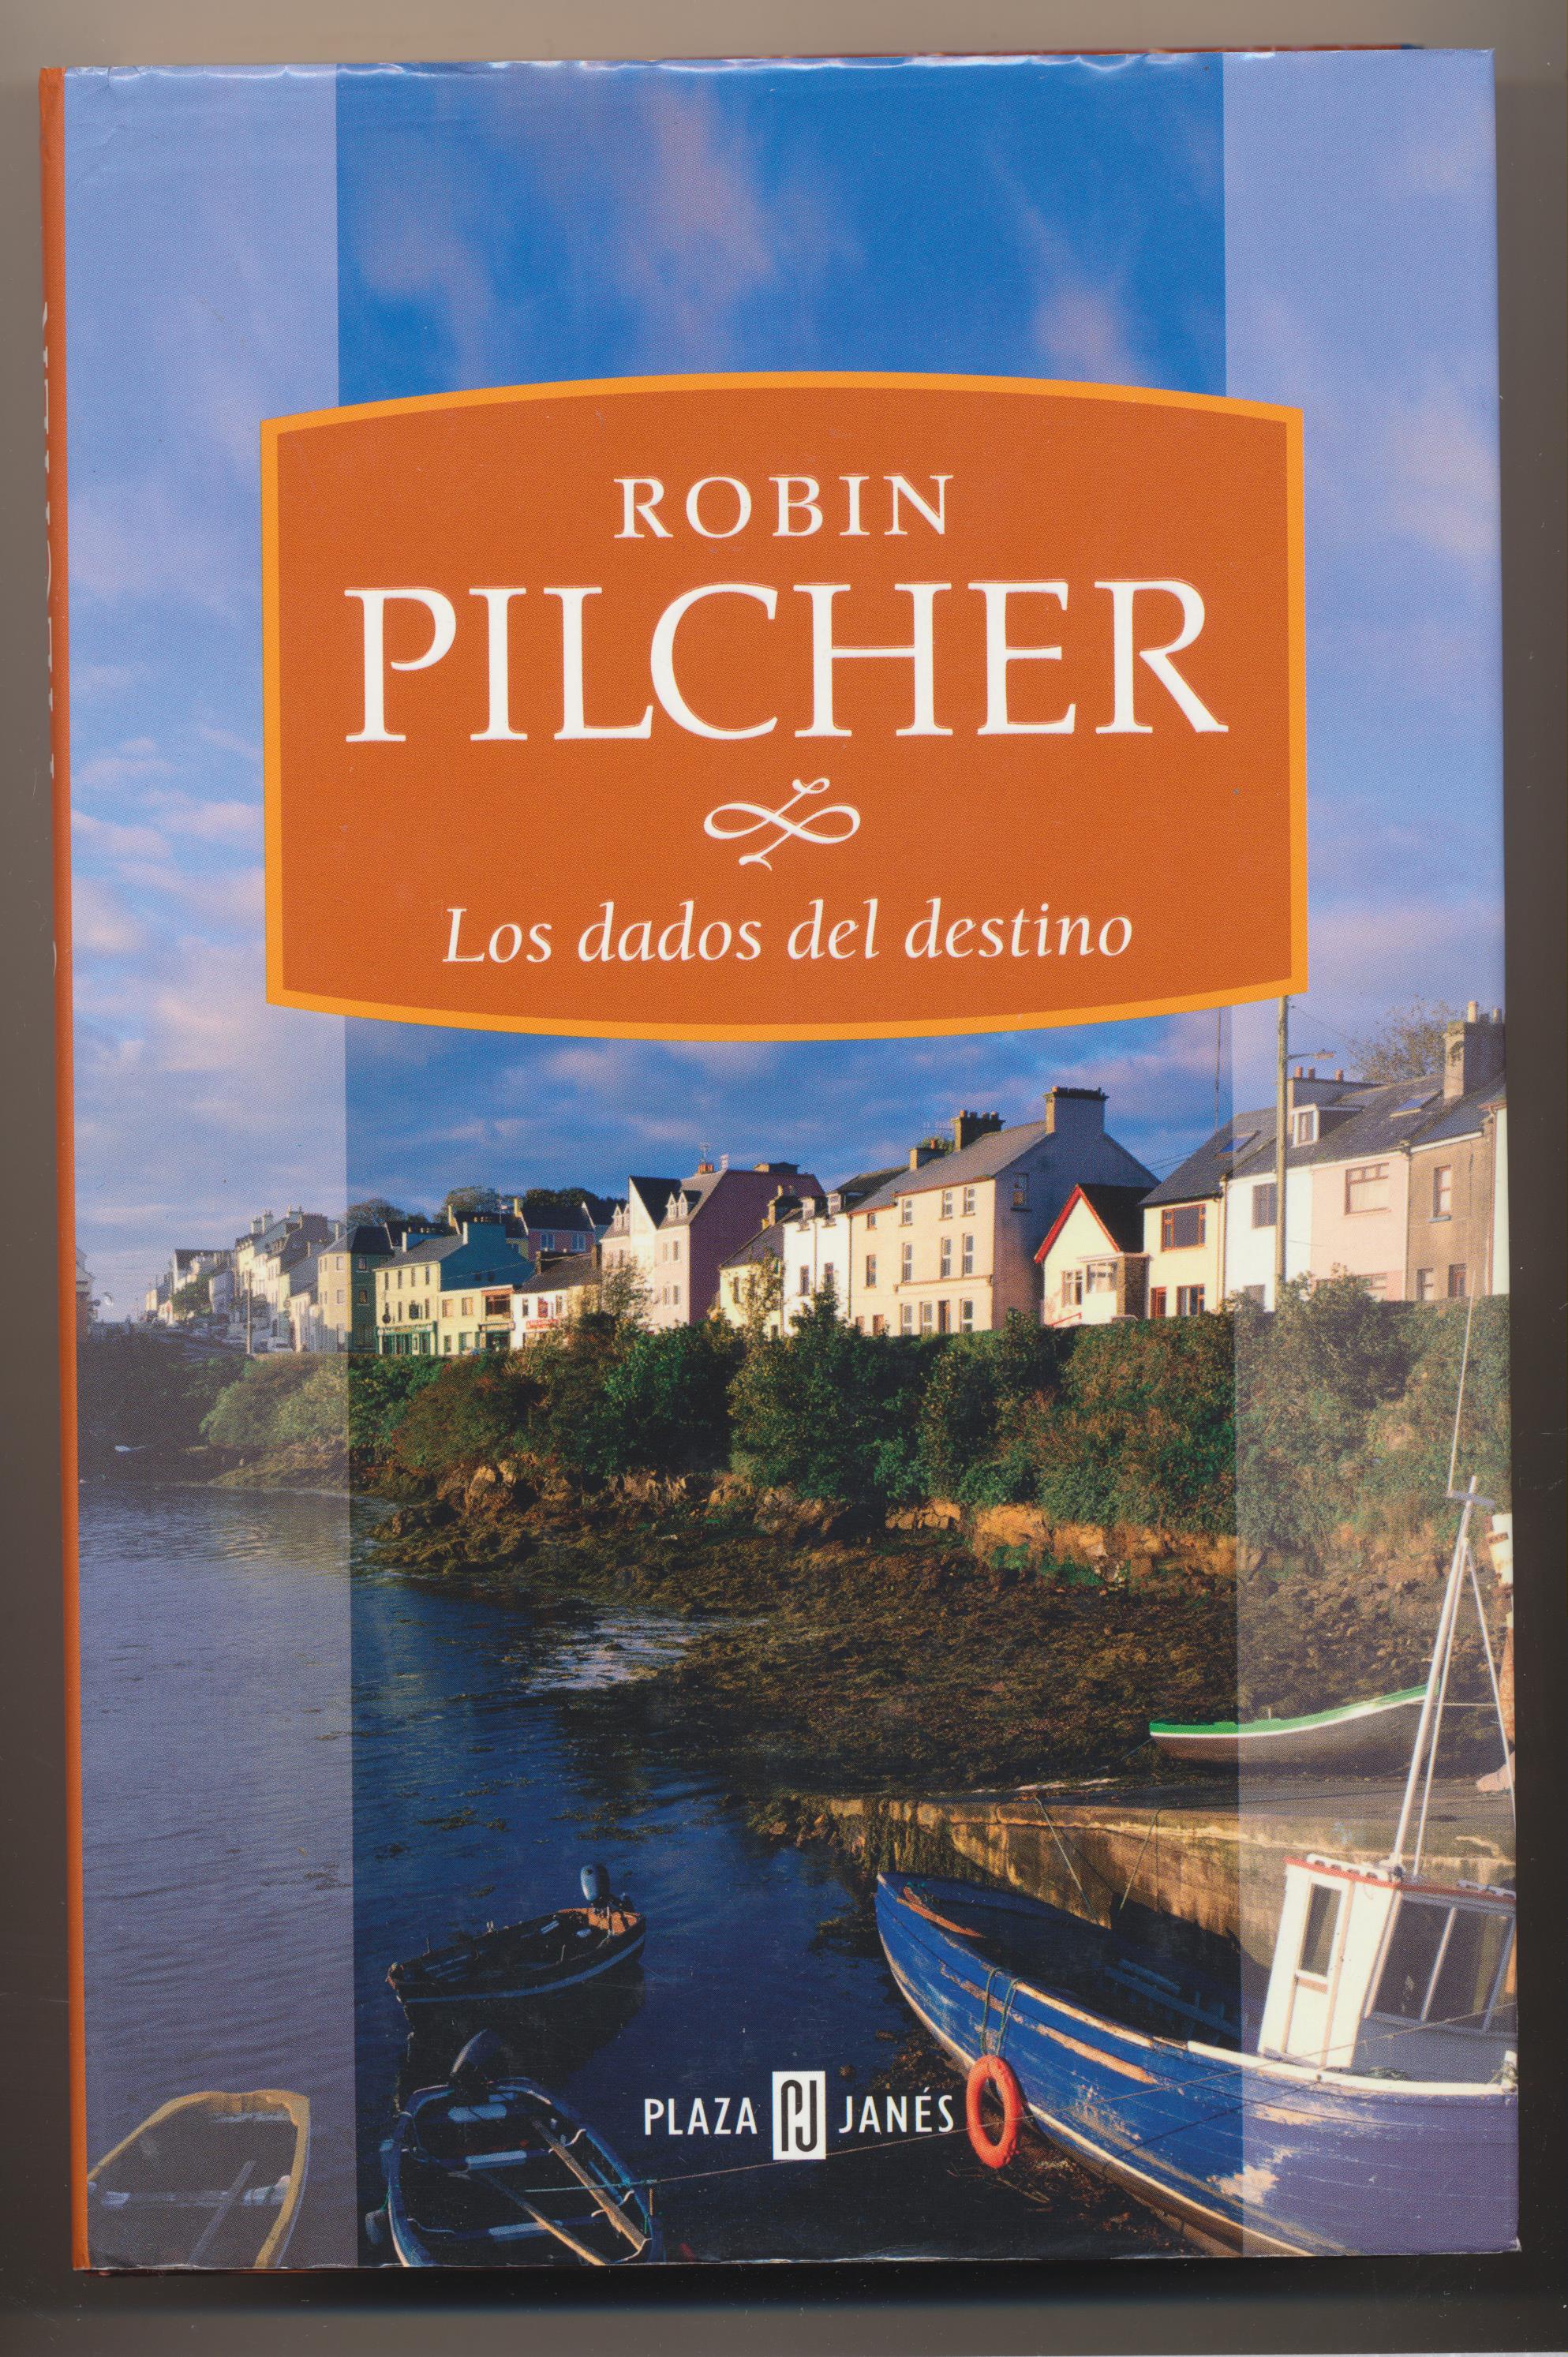 Robin Pilcher. Los dados del Destino. 1ª Edición Plaza Janes 2005